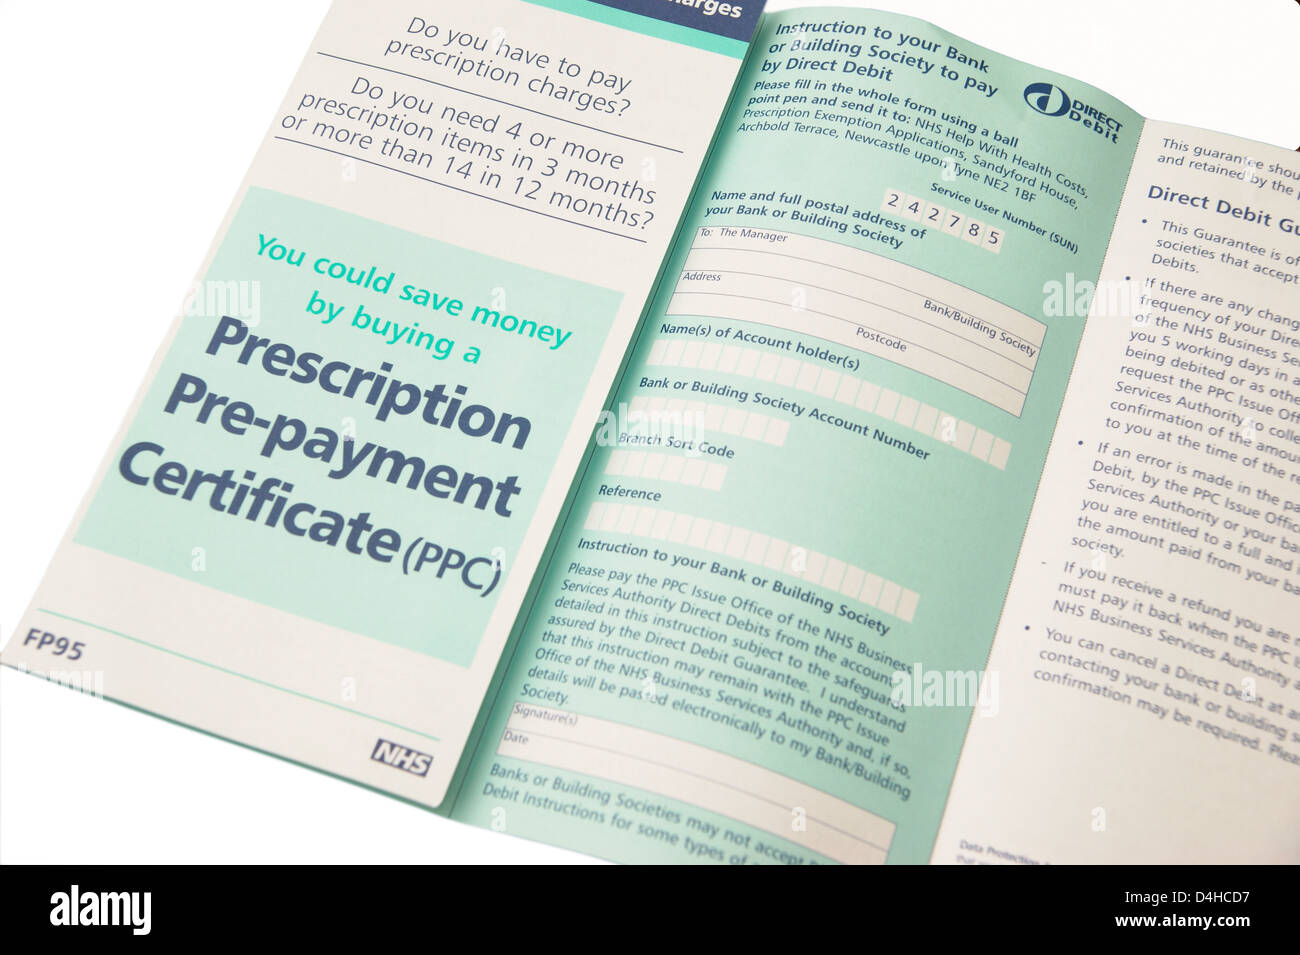 Formulario Appplication para solicitar un certificado de Pre-pago de prescripción (CCP) ahorrar dinero cuando 4 o más elementos son necesarios Foto de stock